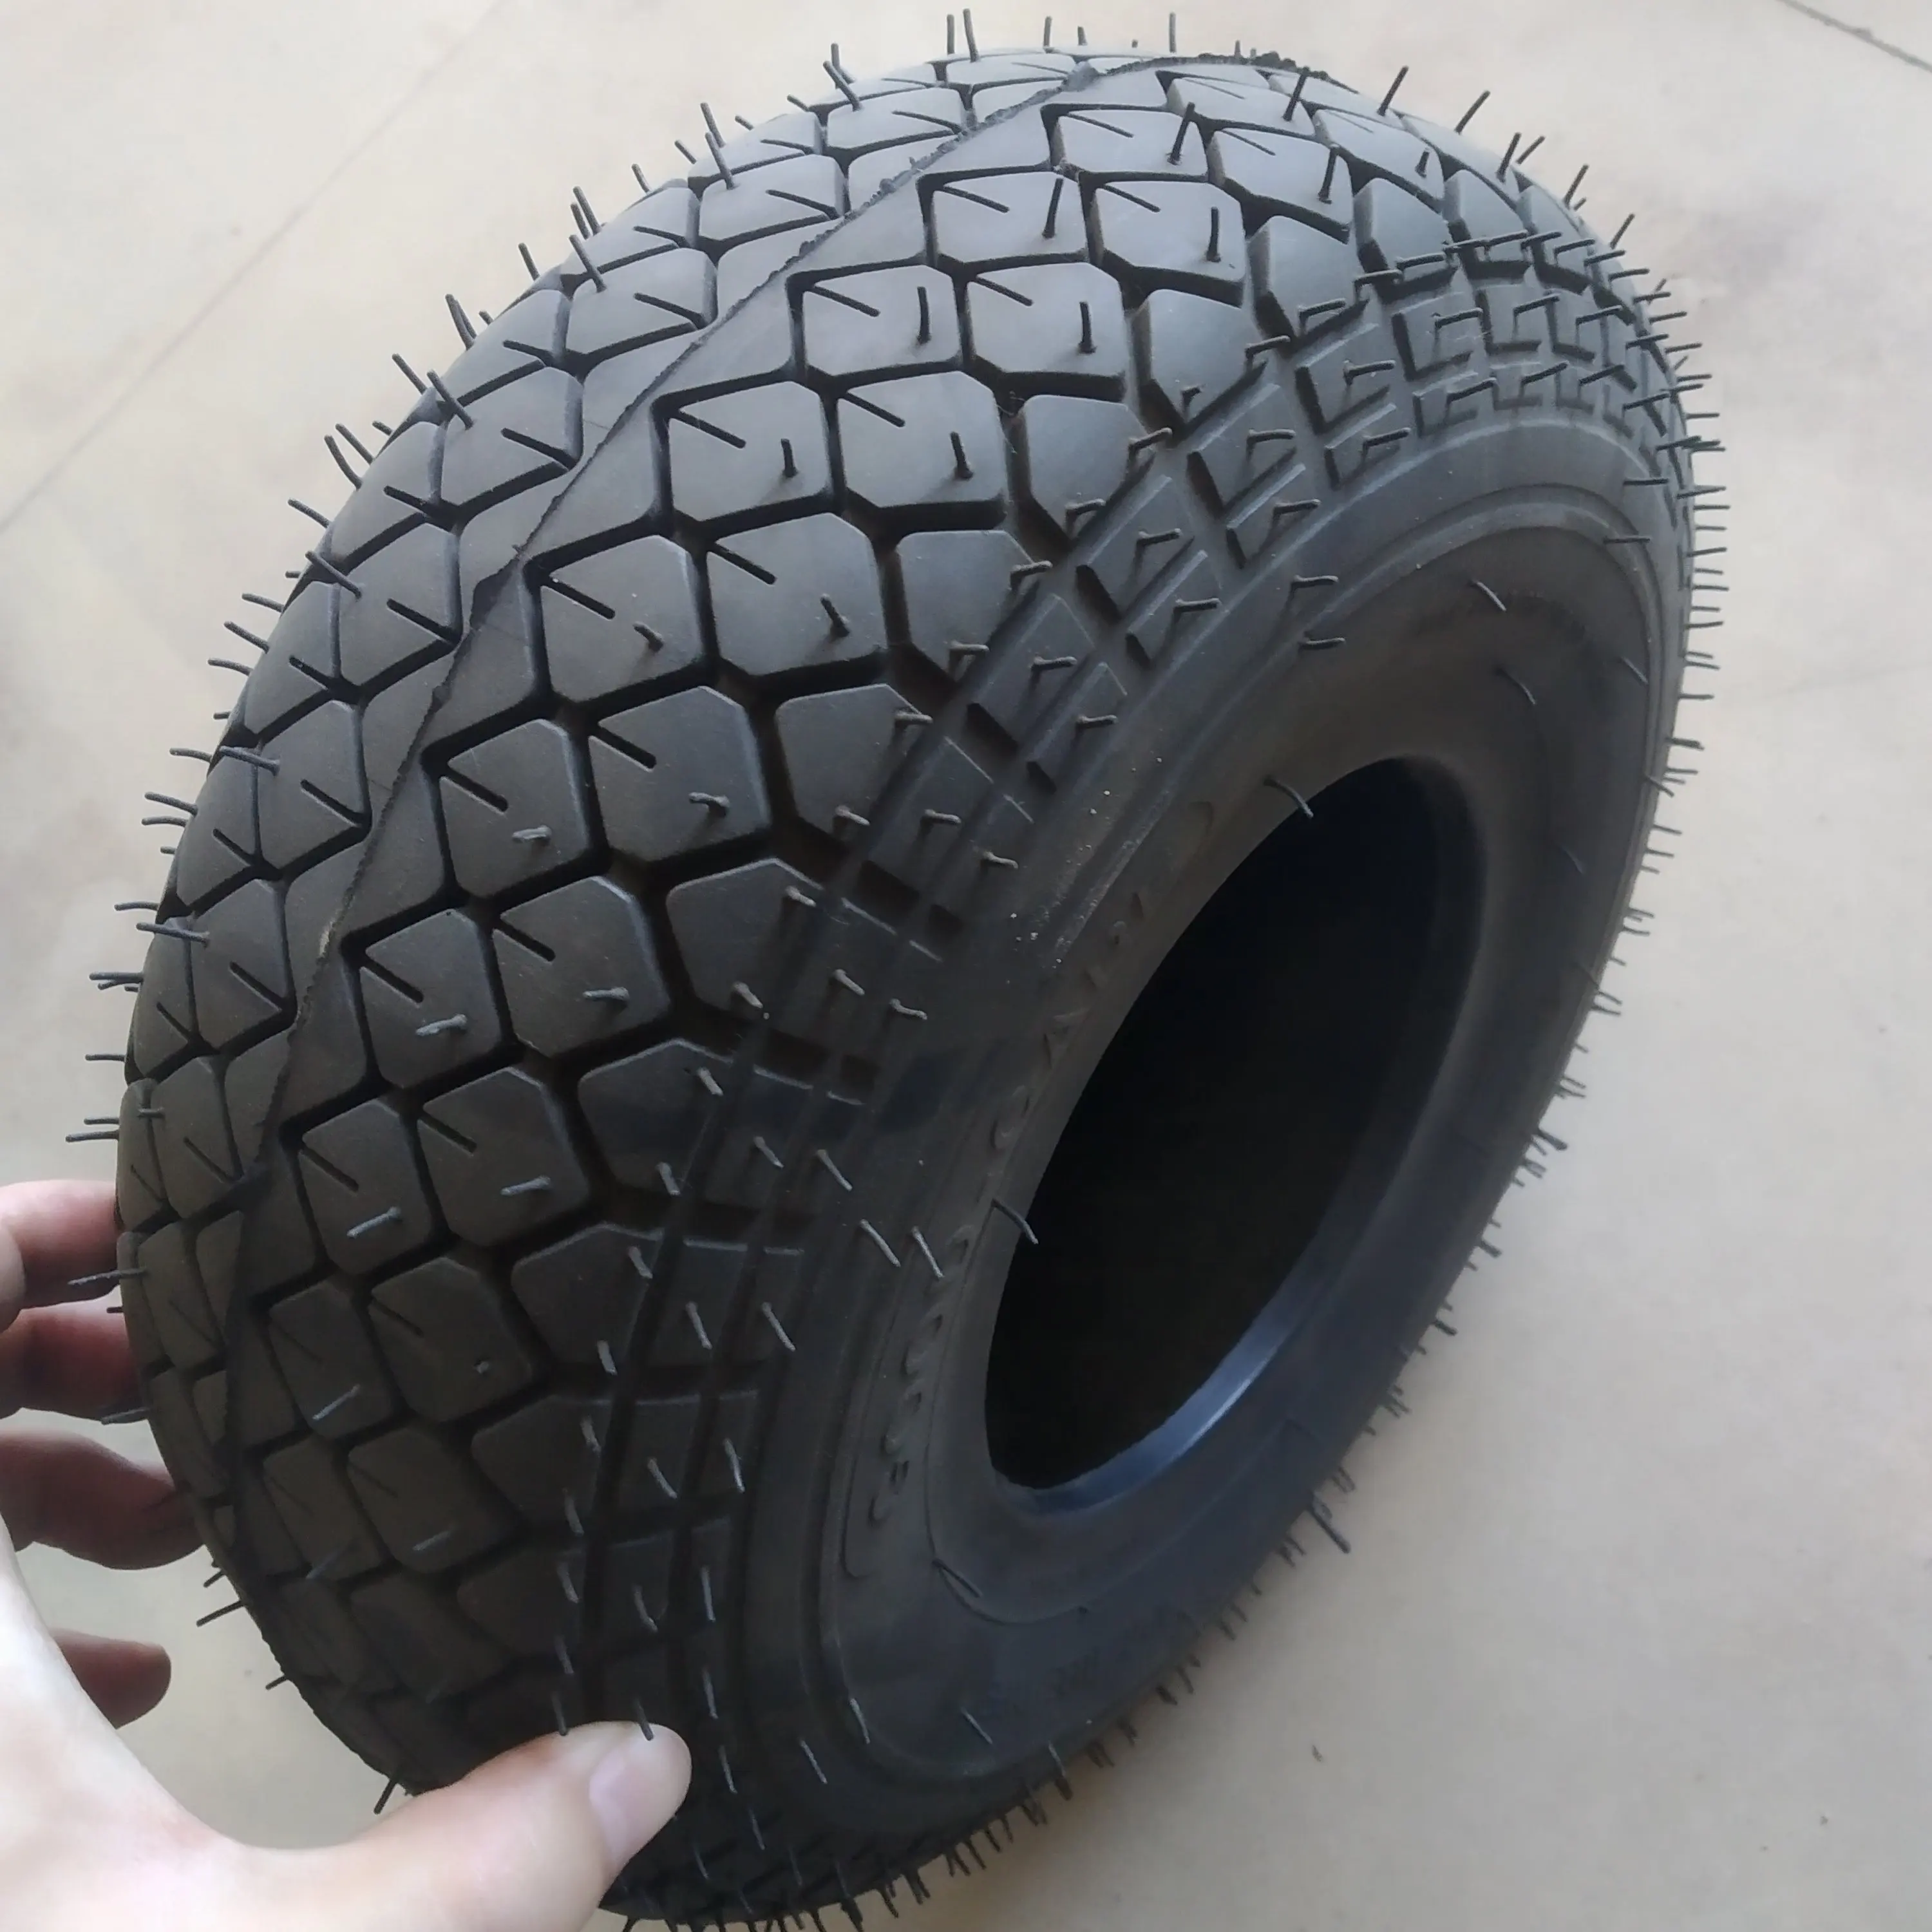 flat free lawnmower tire on wheel